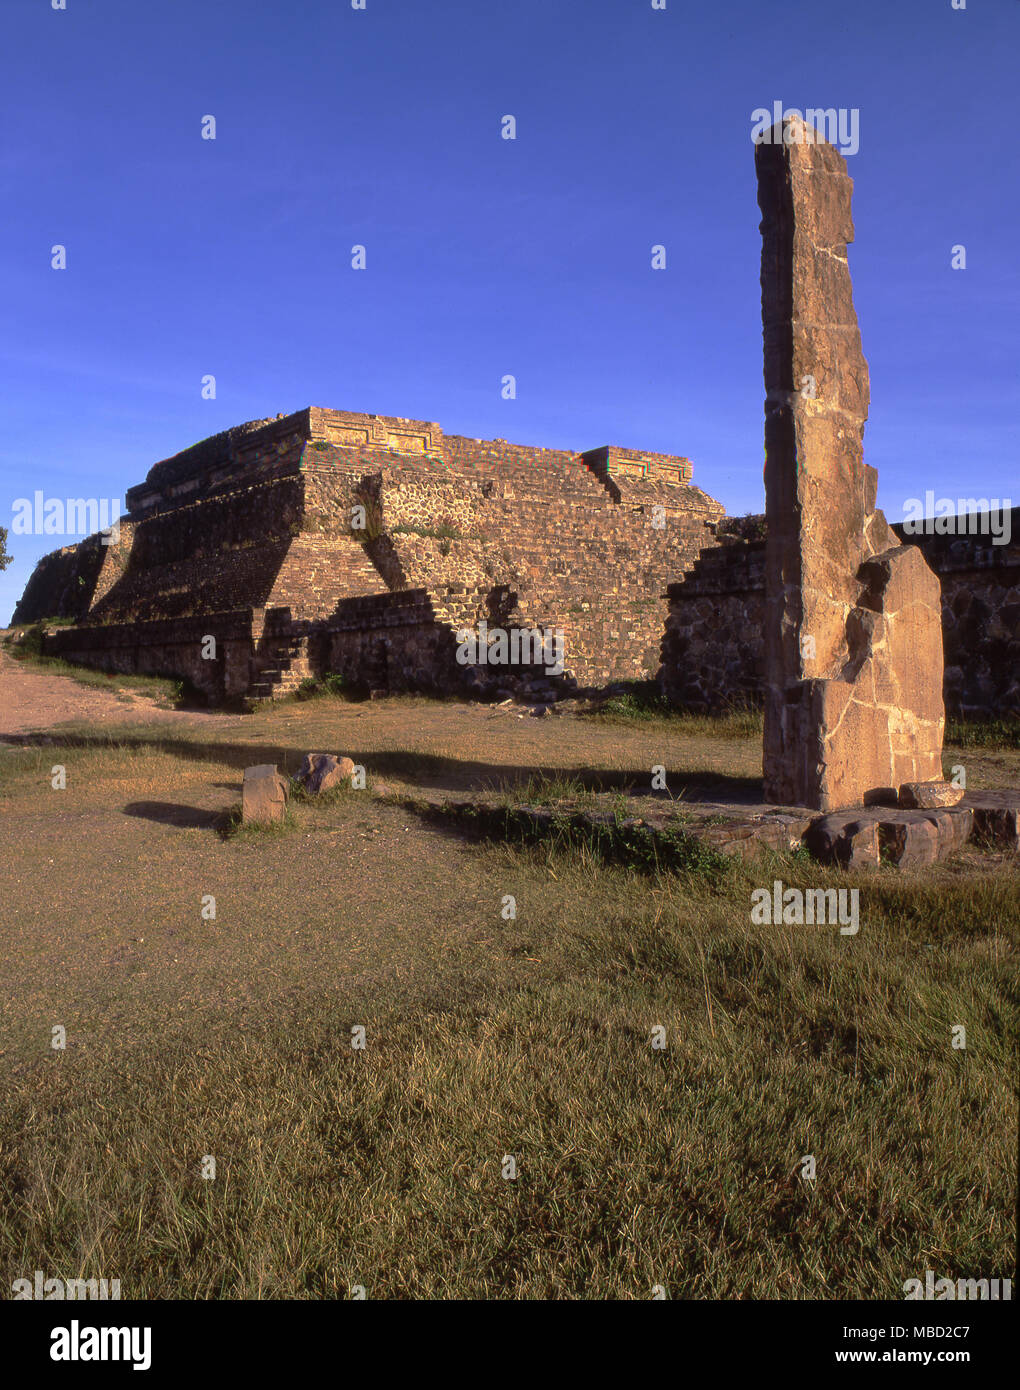 L'archéologie mexicaine. Monte Alban a une histoire complexe, ses bâtiments couvrent des périodes datant de 600 avant JC à 750 après JC. Temple-pyramide system IV. Banque D'Images